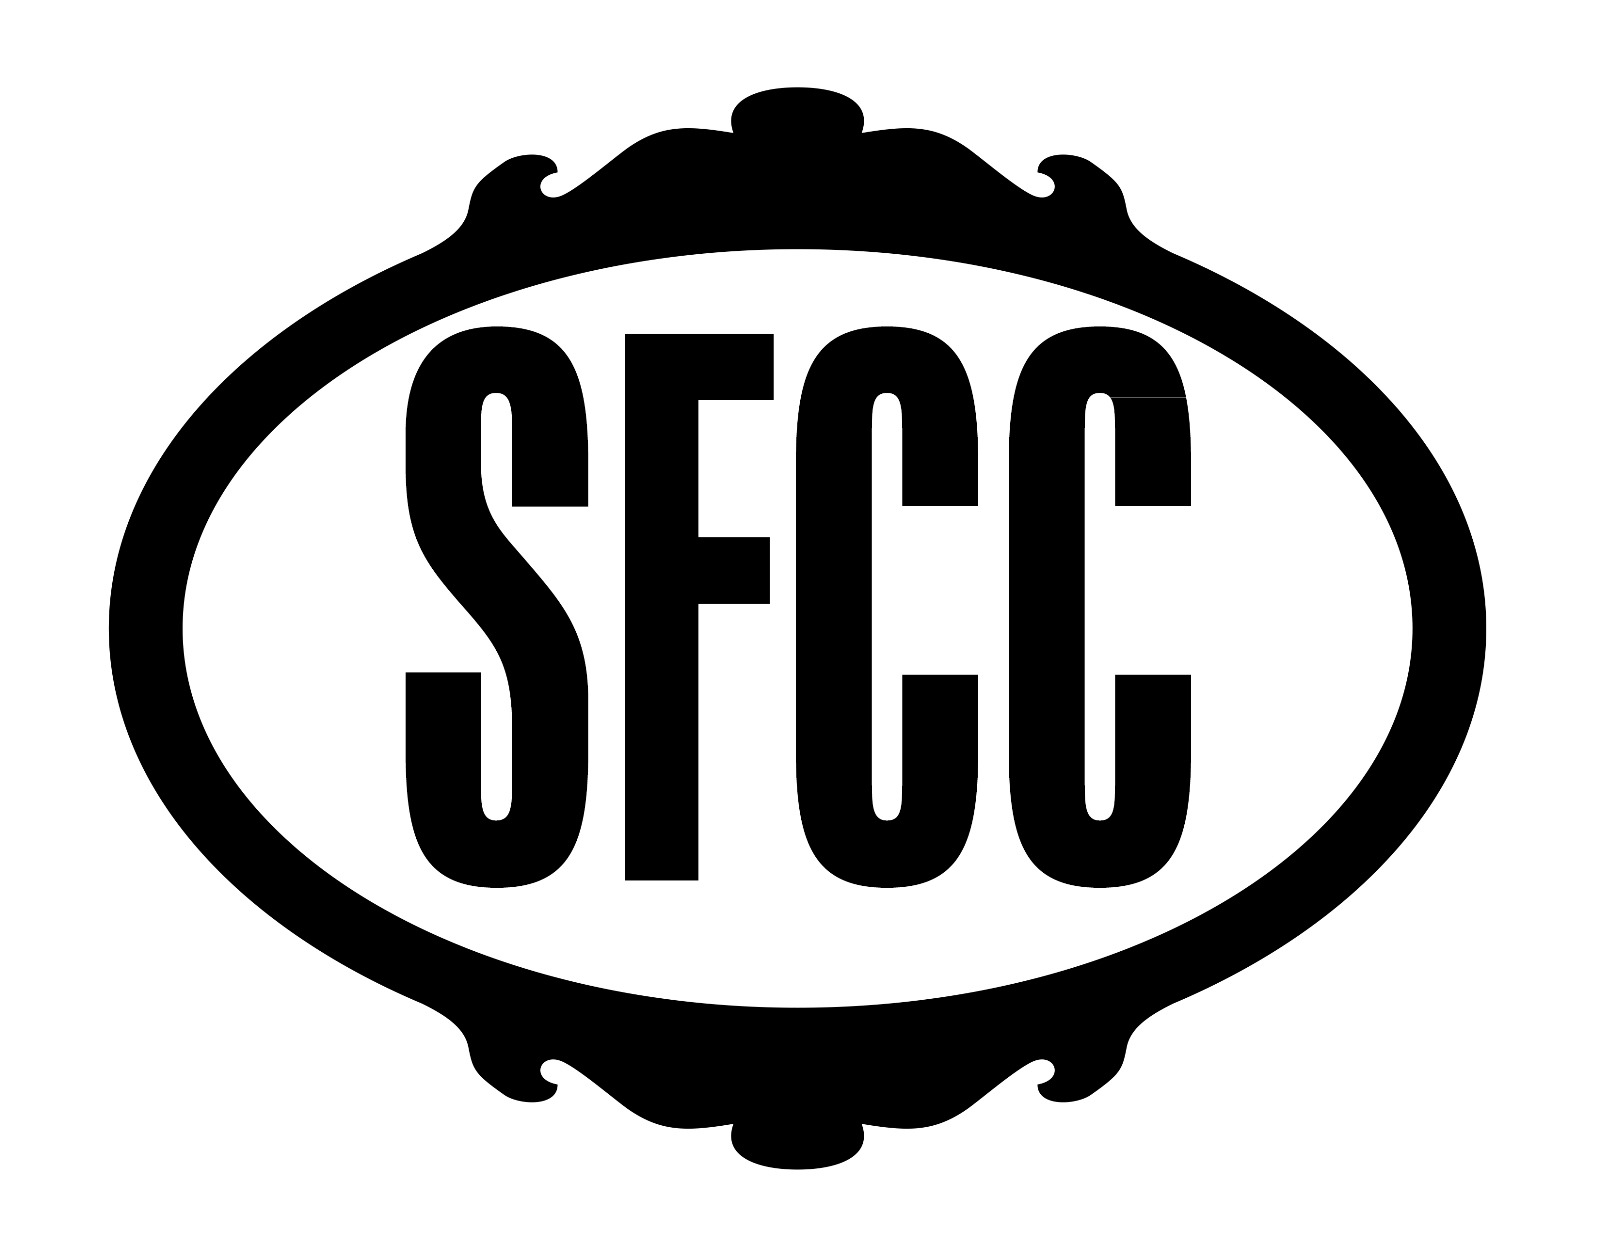 thesfcc.org